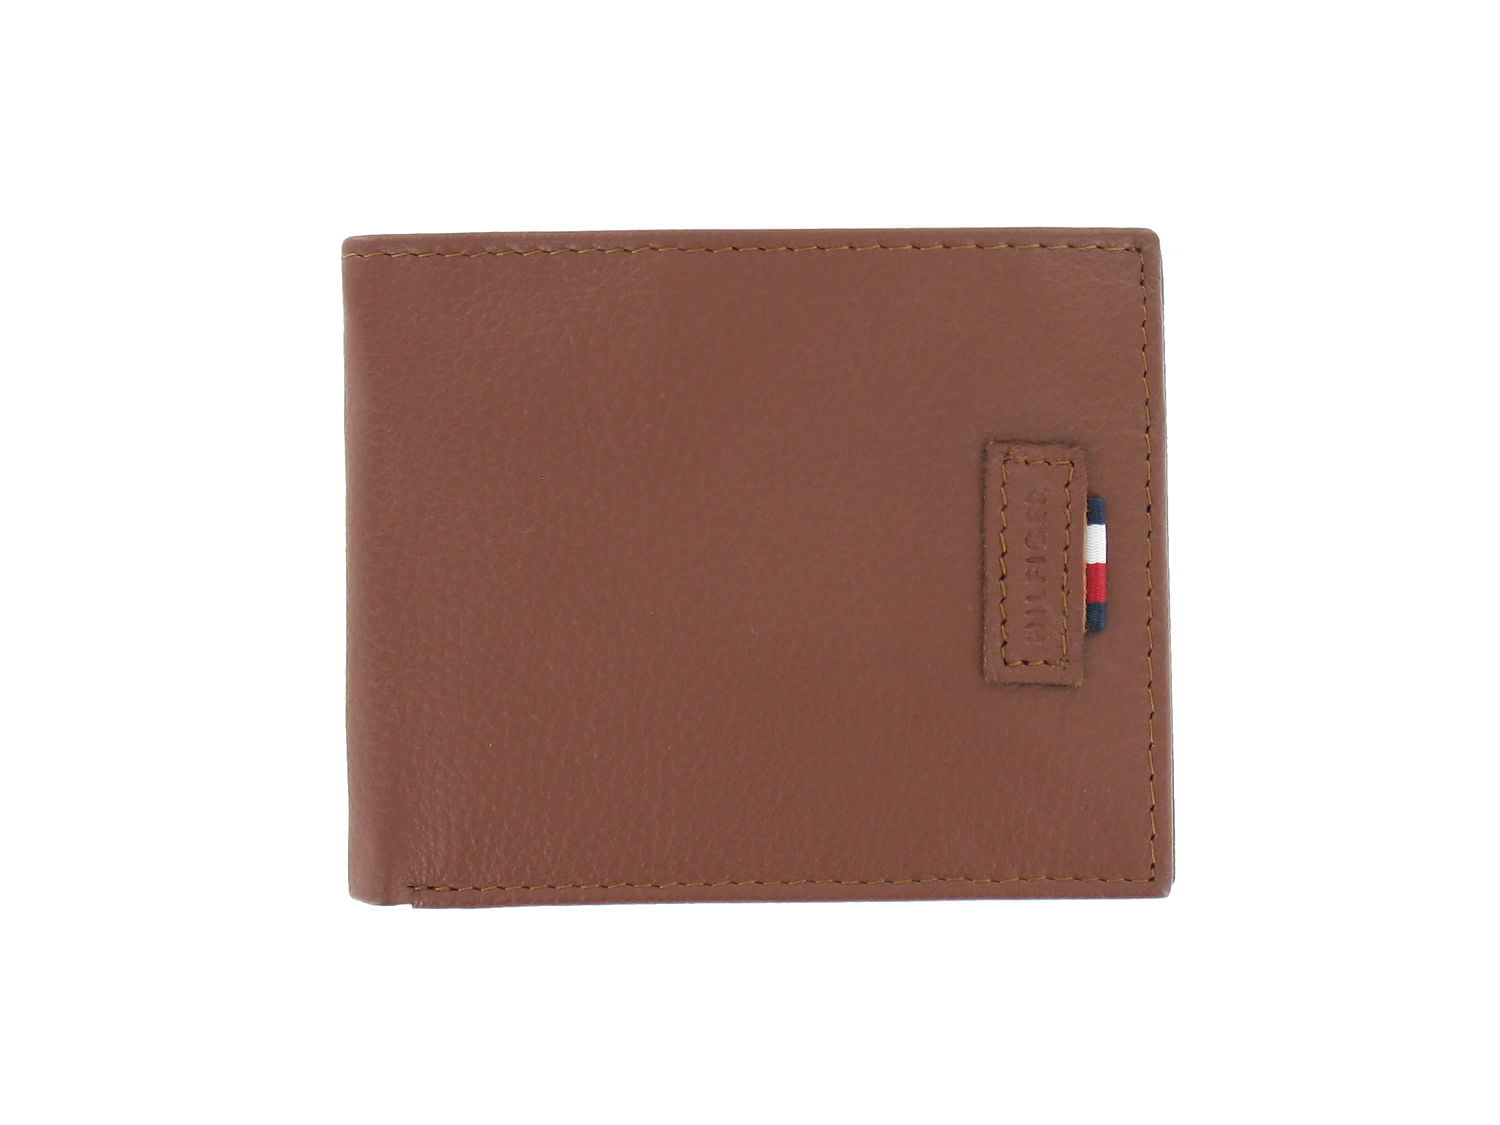 Hilfiger Men's Dark Tan Genuine Leather ID | Bi-Fold Wallet - Walmart.com